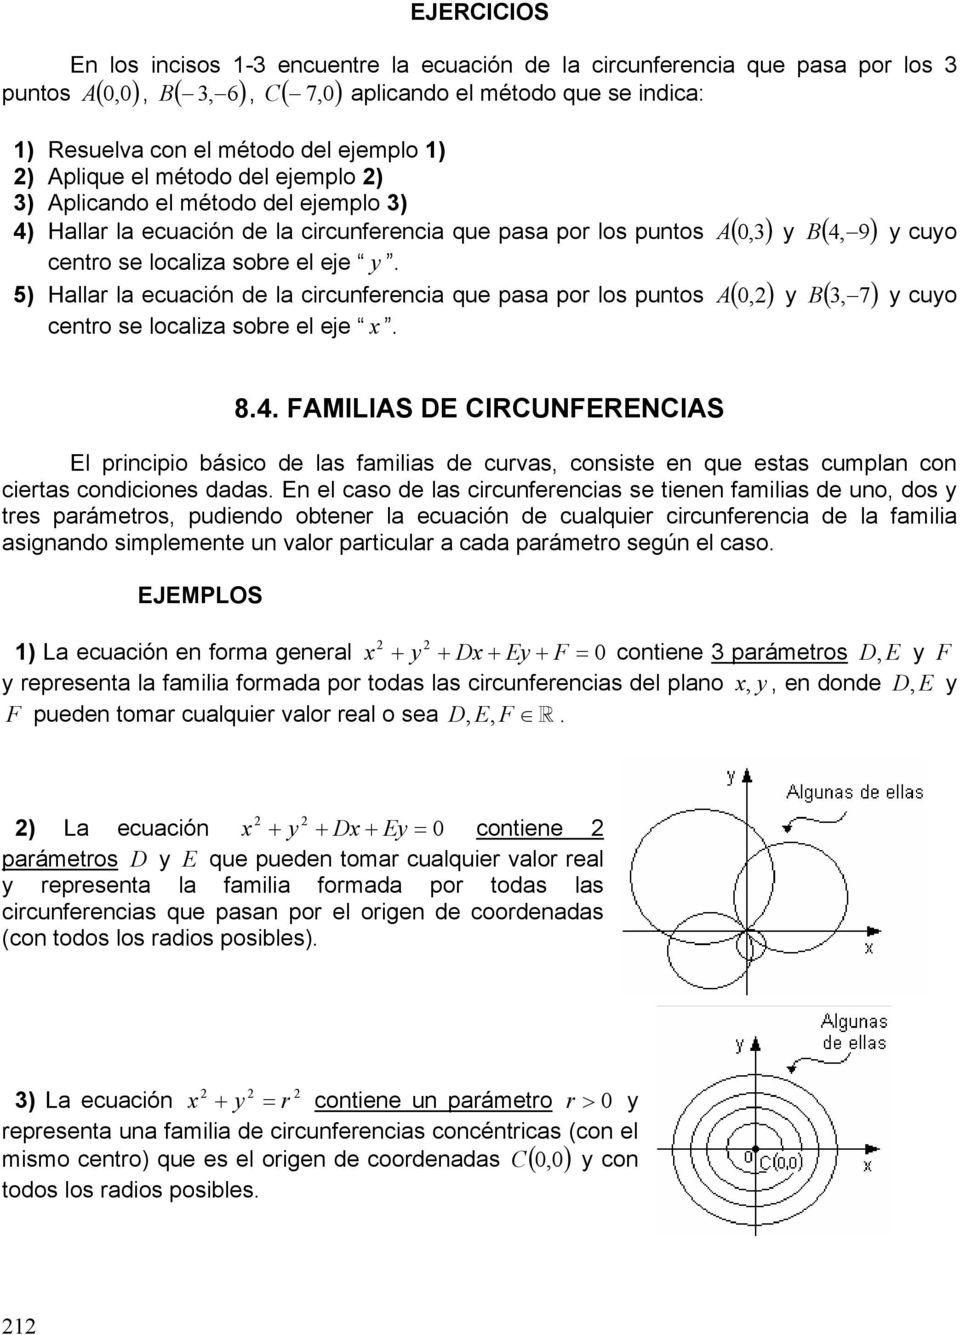 cuo ) Hallar la ecuación de la circunferencia que pasa por los puntos ( 0,) (, 7) centro se localiza sobre el eje. cuo 8.